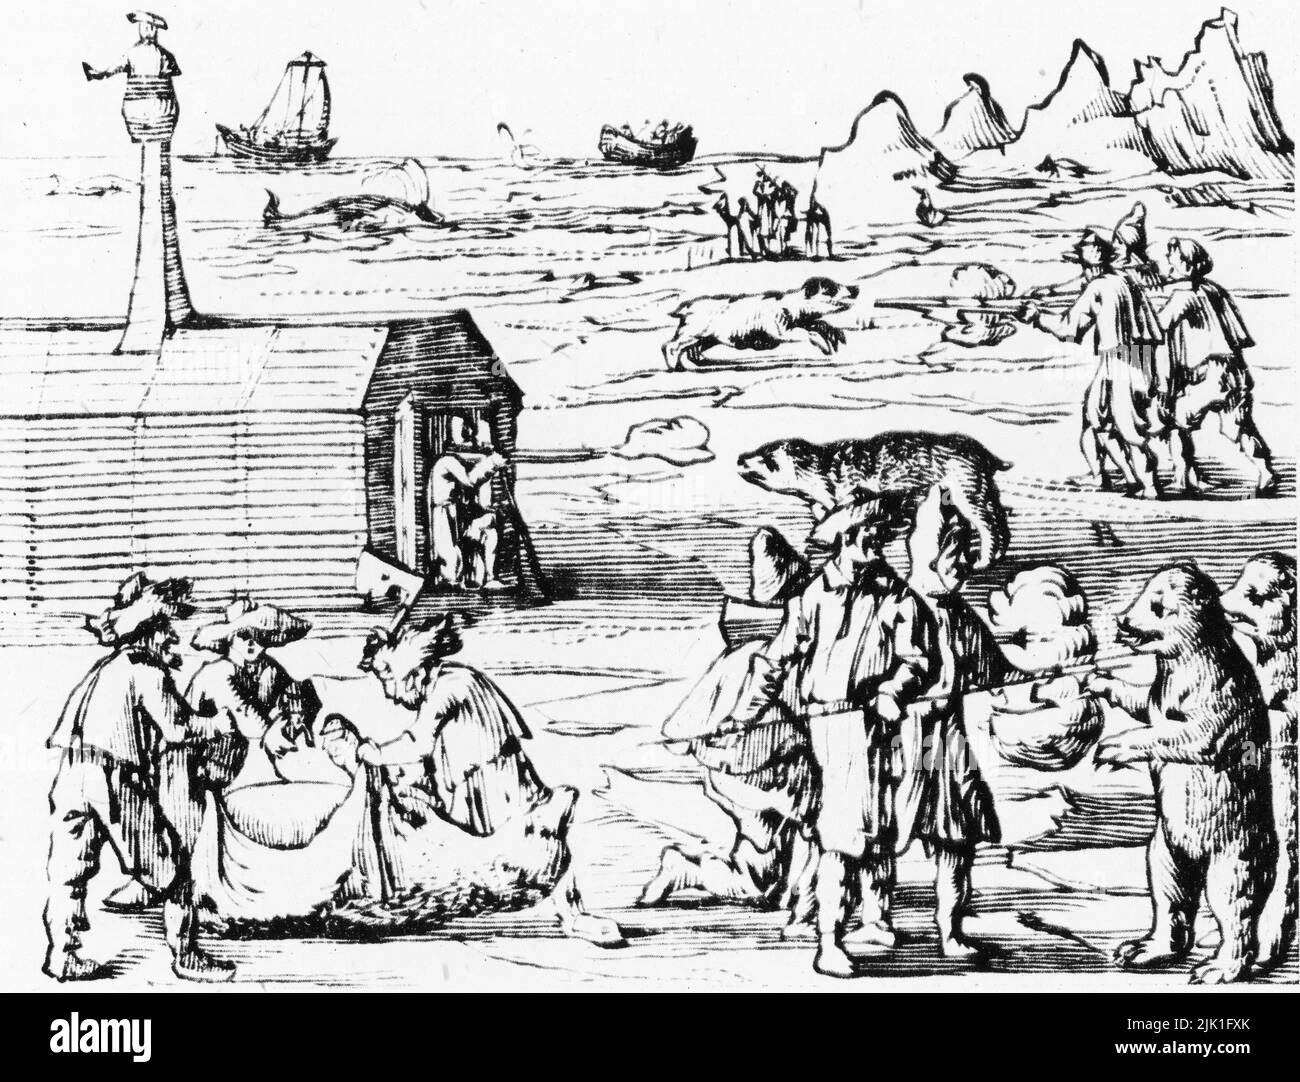 Spitzbergen: Angriff durch Eisbären, 1634. Holzschnitt aus der Zeitschrift von Jacob Segersz van der Brugge. Jacob Segersz van der Brugge veröffentlichte seine Zeitschrift kurz nach seiner Rückkehr vom Walfang im Jahr 1634. Ab 1617 begann ein dänisch gechartertes Unternehmen, Walfangflotten nach Spitzbergen zu schicken. Spitzbergen ist die größte und einzige dauerhaft besiedelte Insel des Spitzbergen-Archipels in Norwegen. Stockfoto